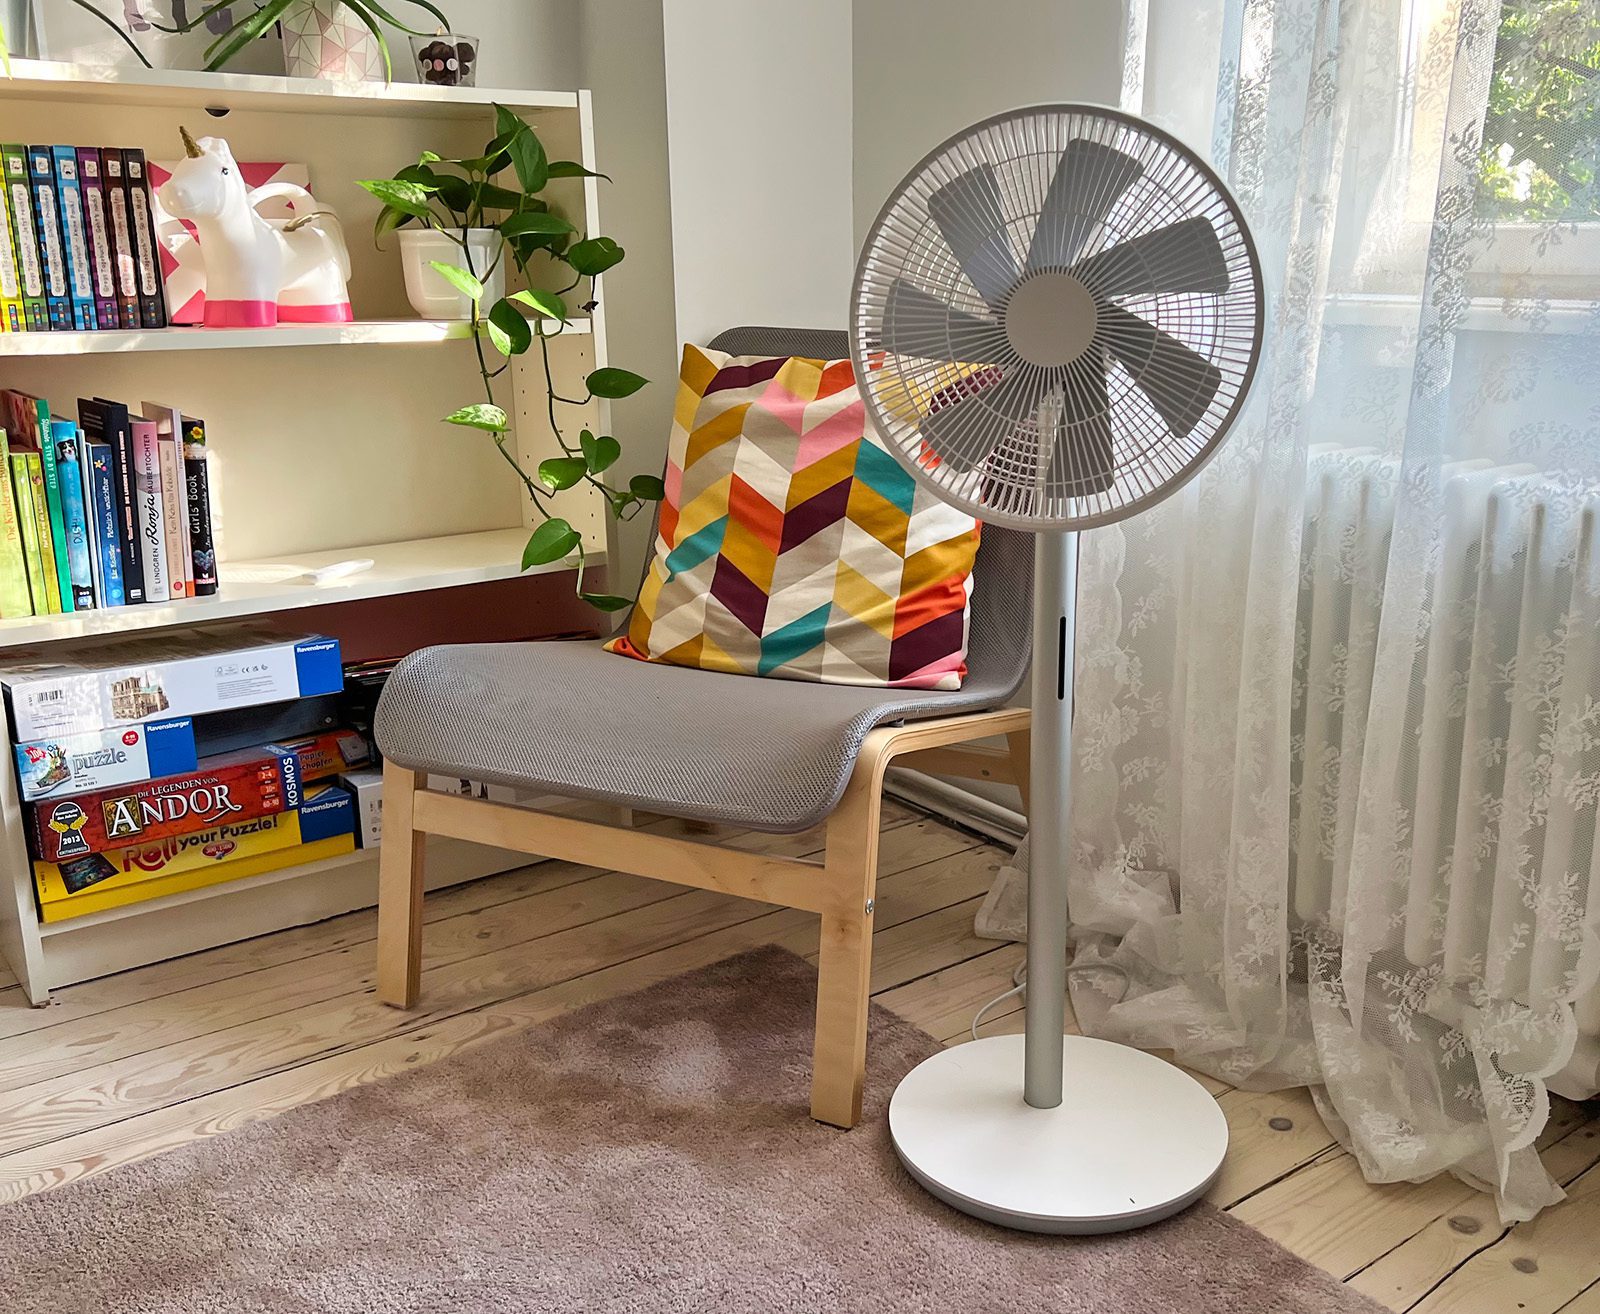 Hier sieht man den Smartmi Standing Fan 3 im Kinderzimmer – das sah einfach besser aus als mein chaotisches Büro. 